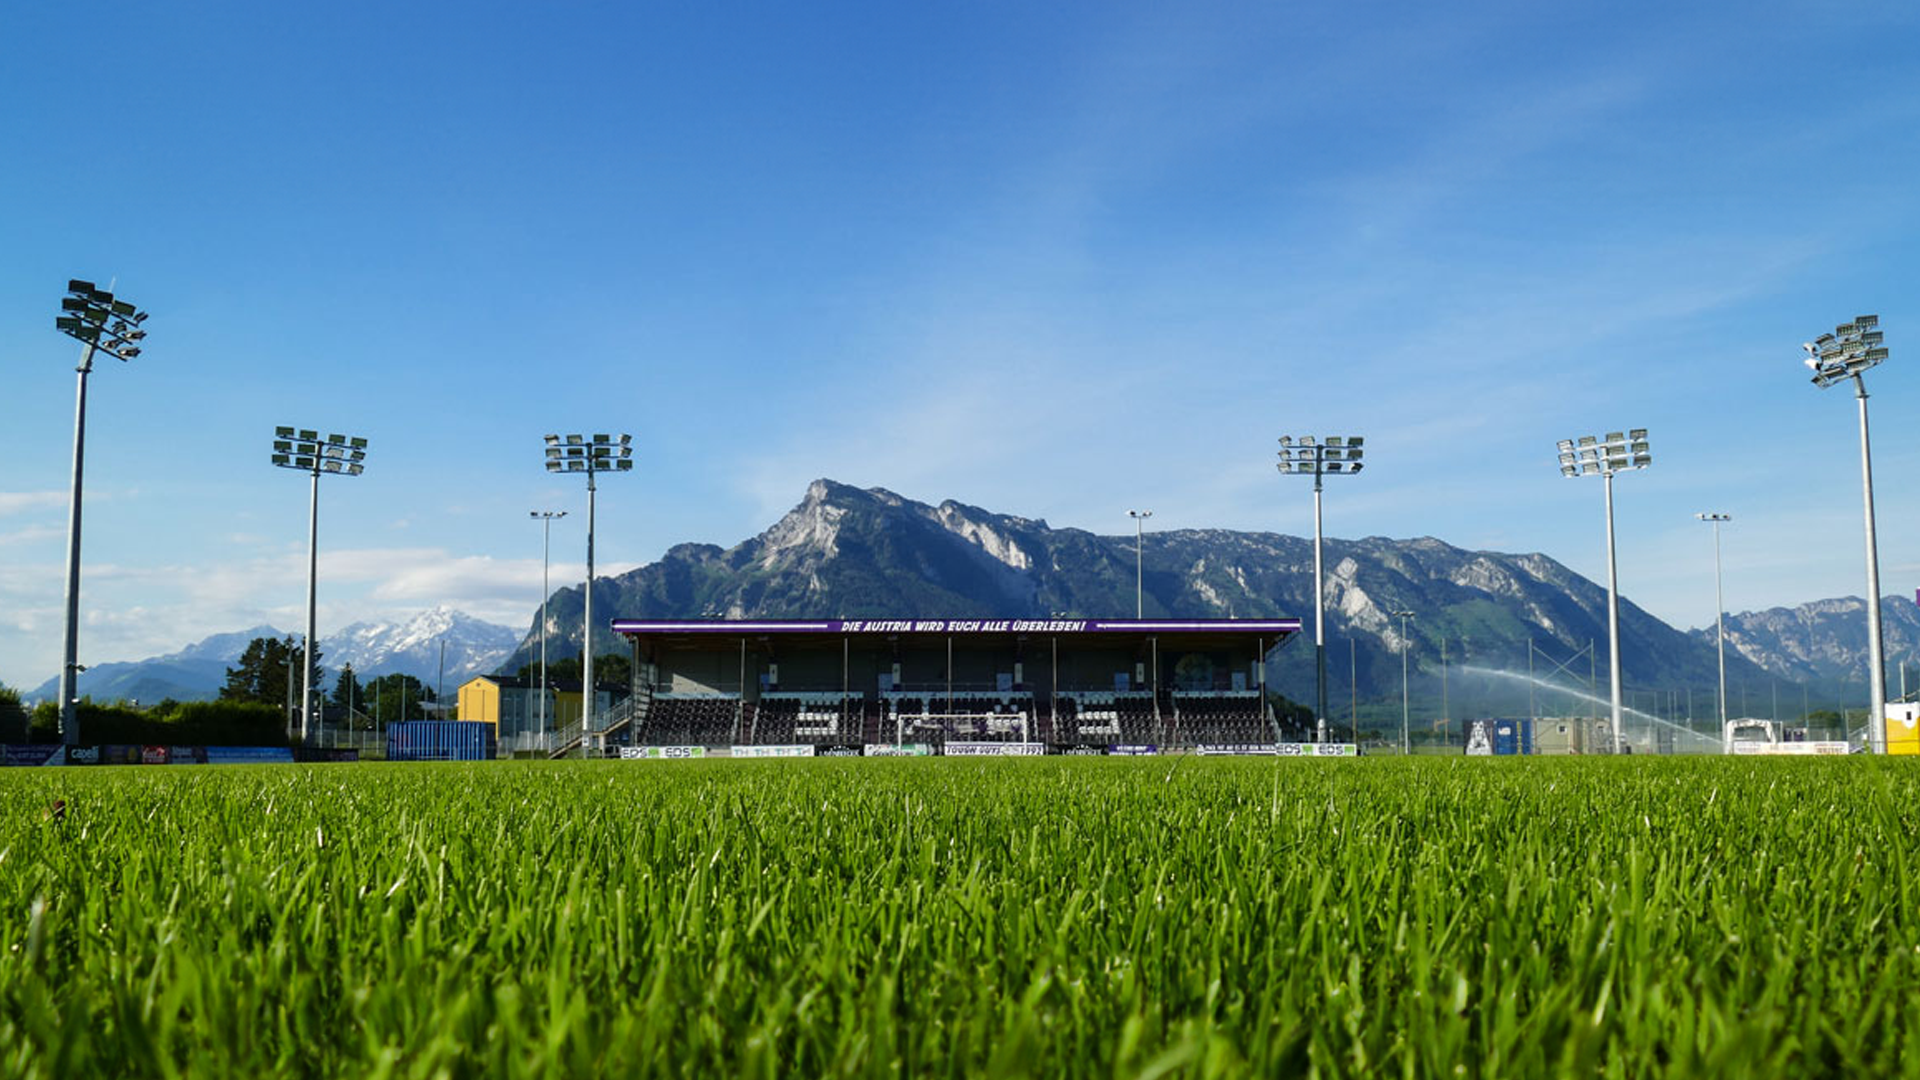 UPDATE: Testspiel bei Austria Salzburg ABGESAGT! FSV spielt nun in Burghausen